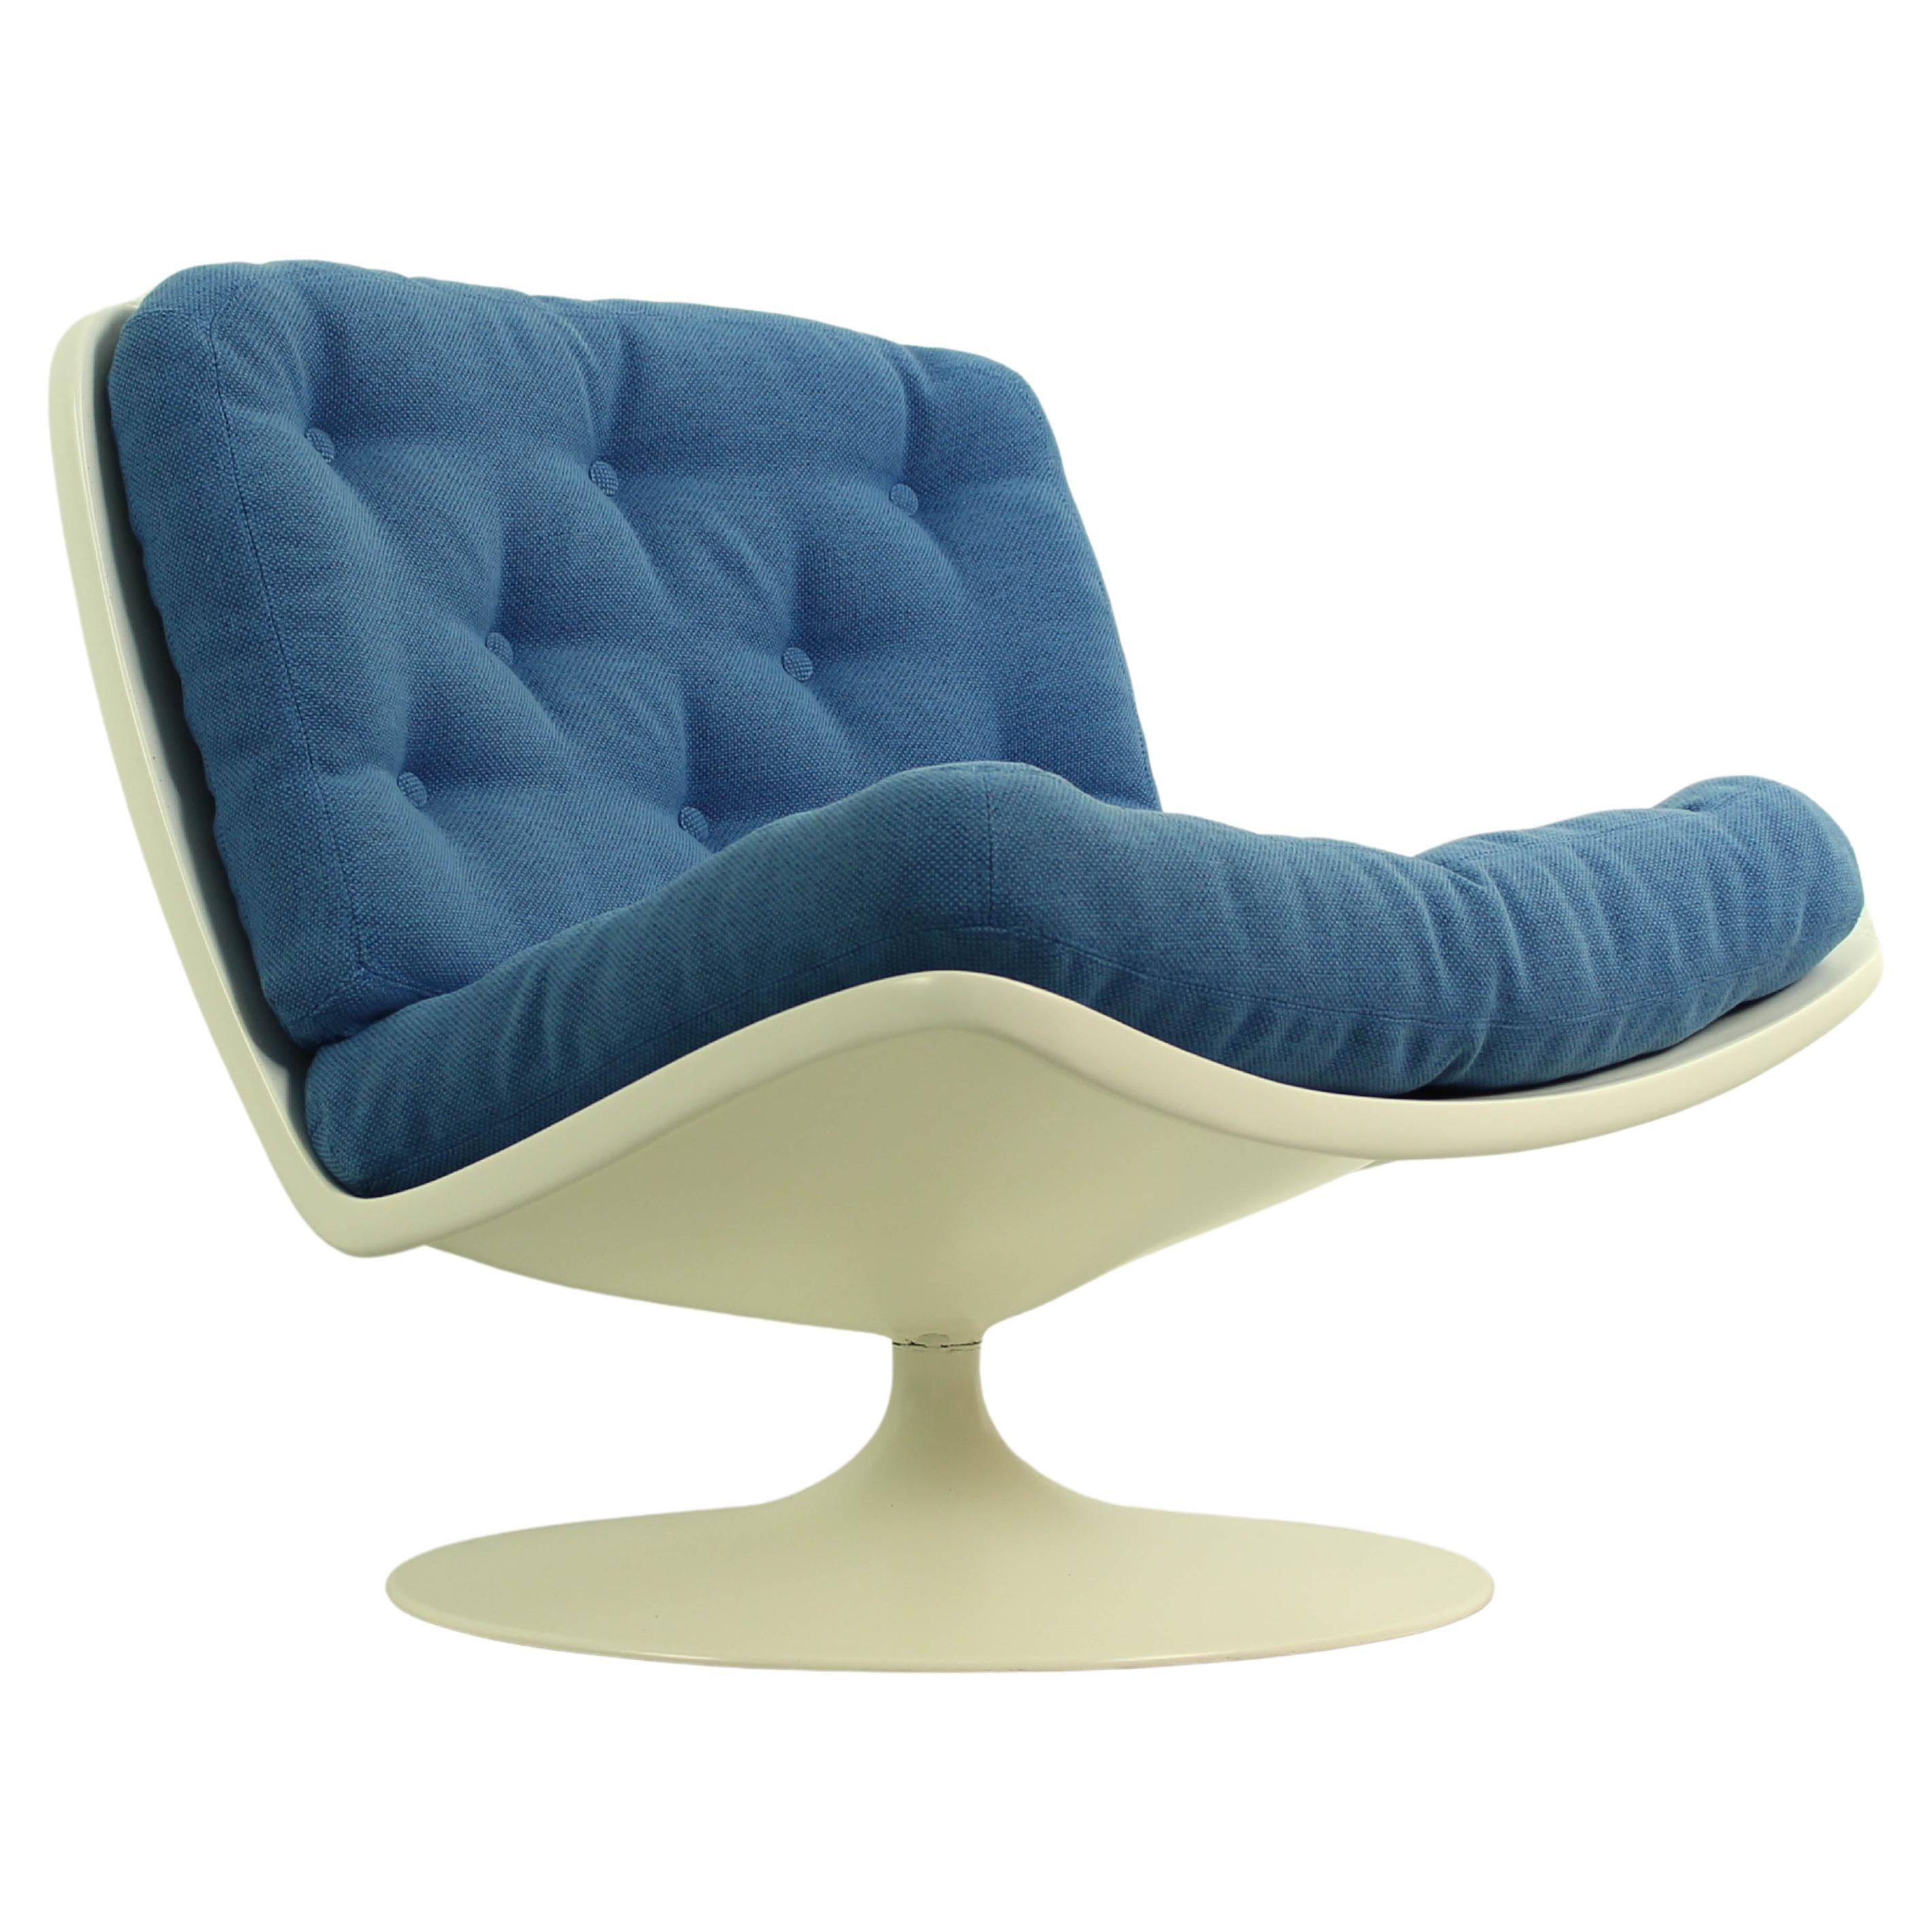 Modell F976 Lounge Chair von Geoffrey Harcourt für Artifort, 1968